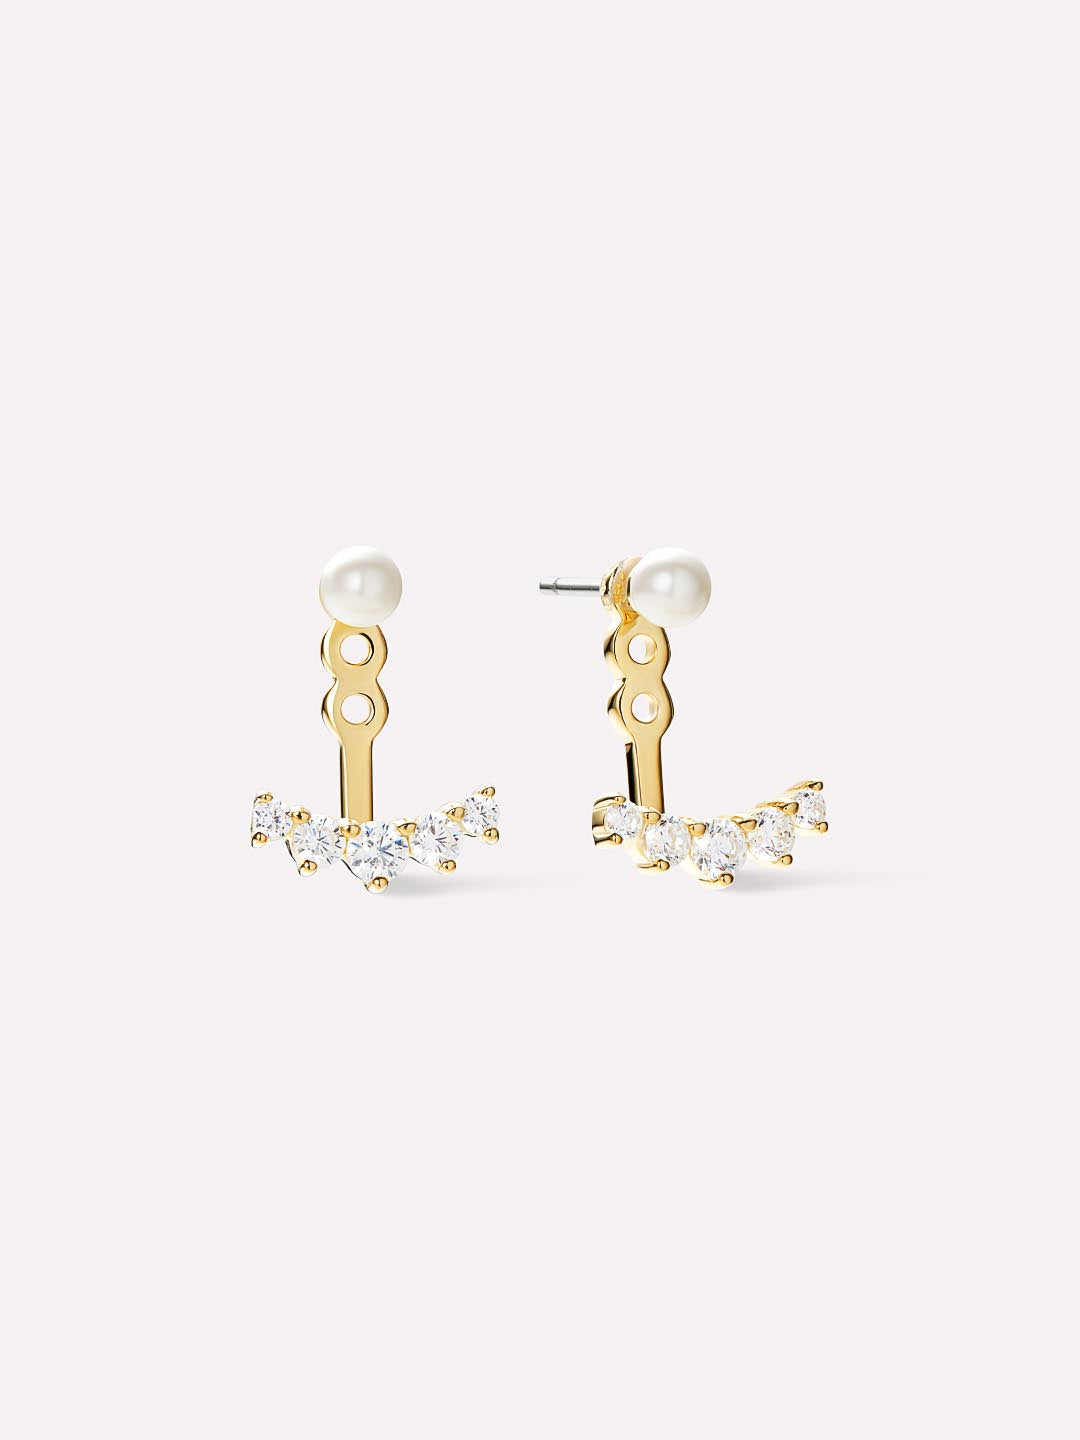 14K Gold Earring Backs - Earring Back Lifters (4 Pcs) - Ana Luisa Jewelry